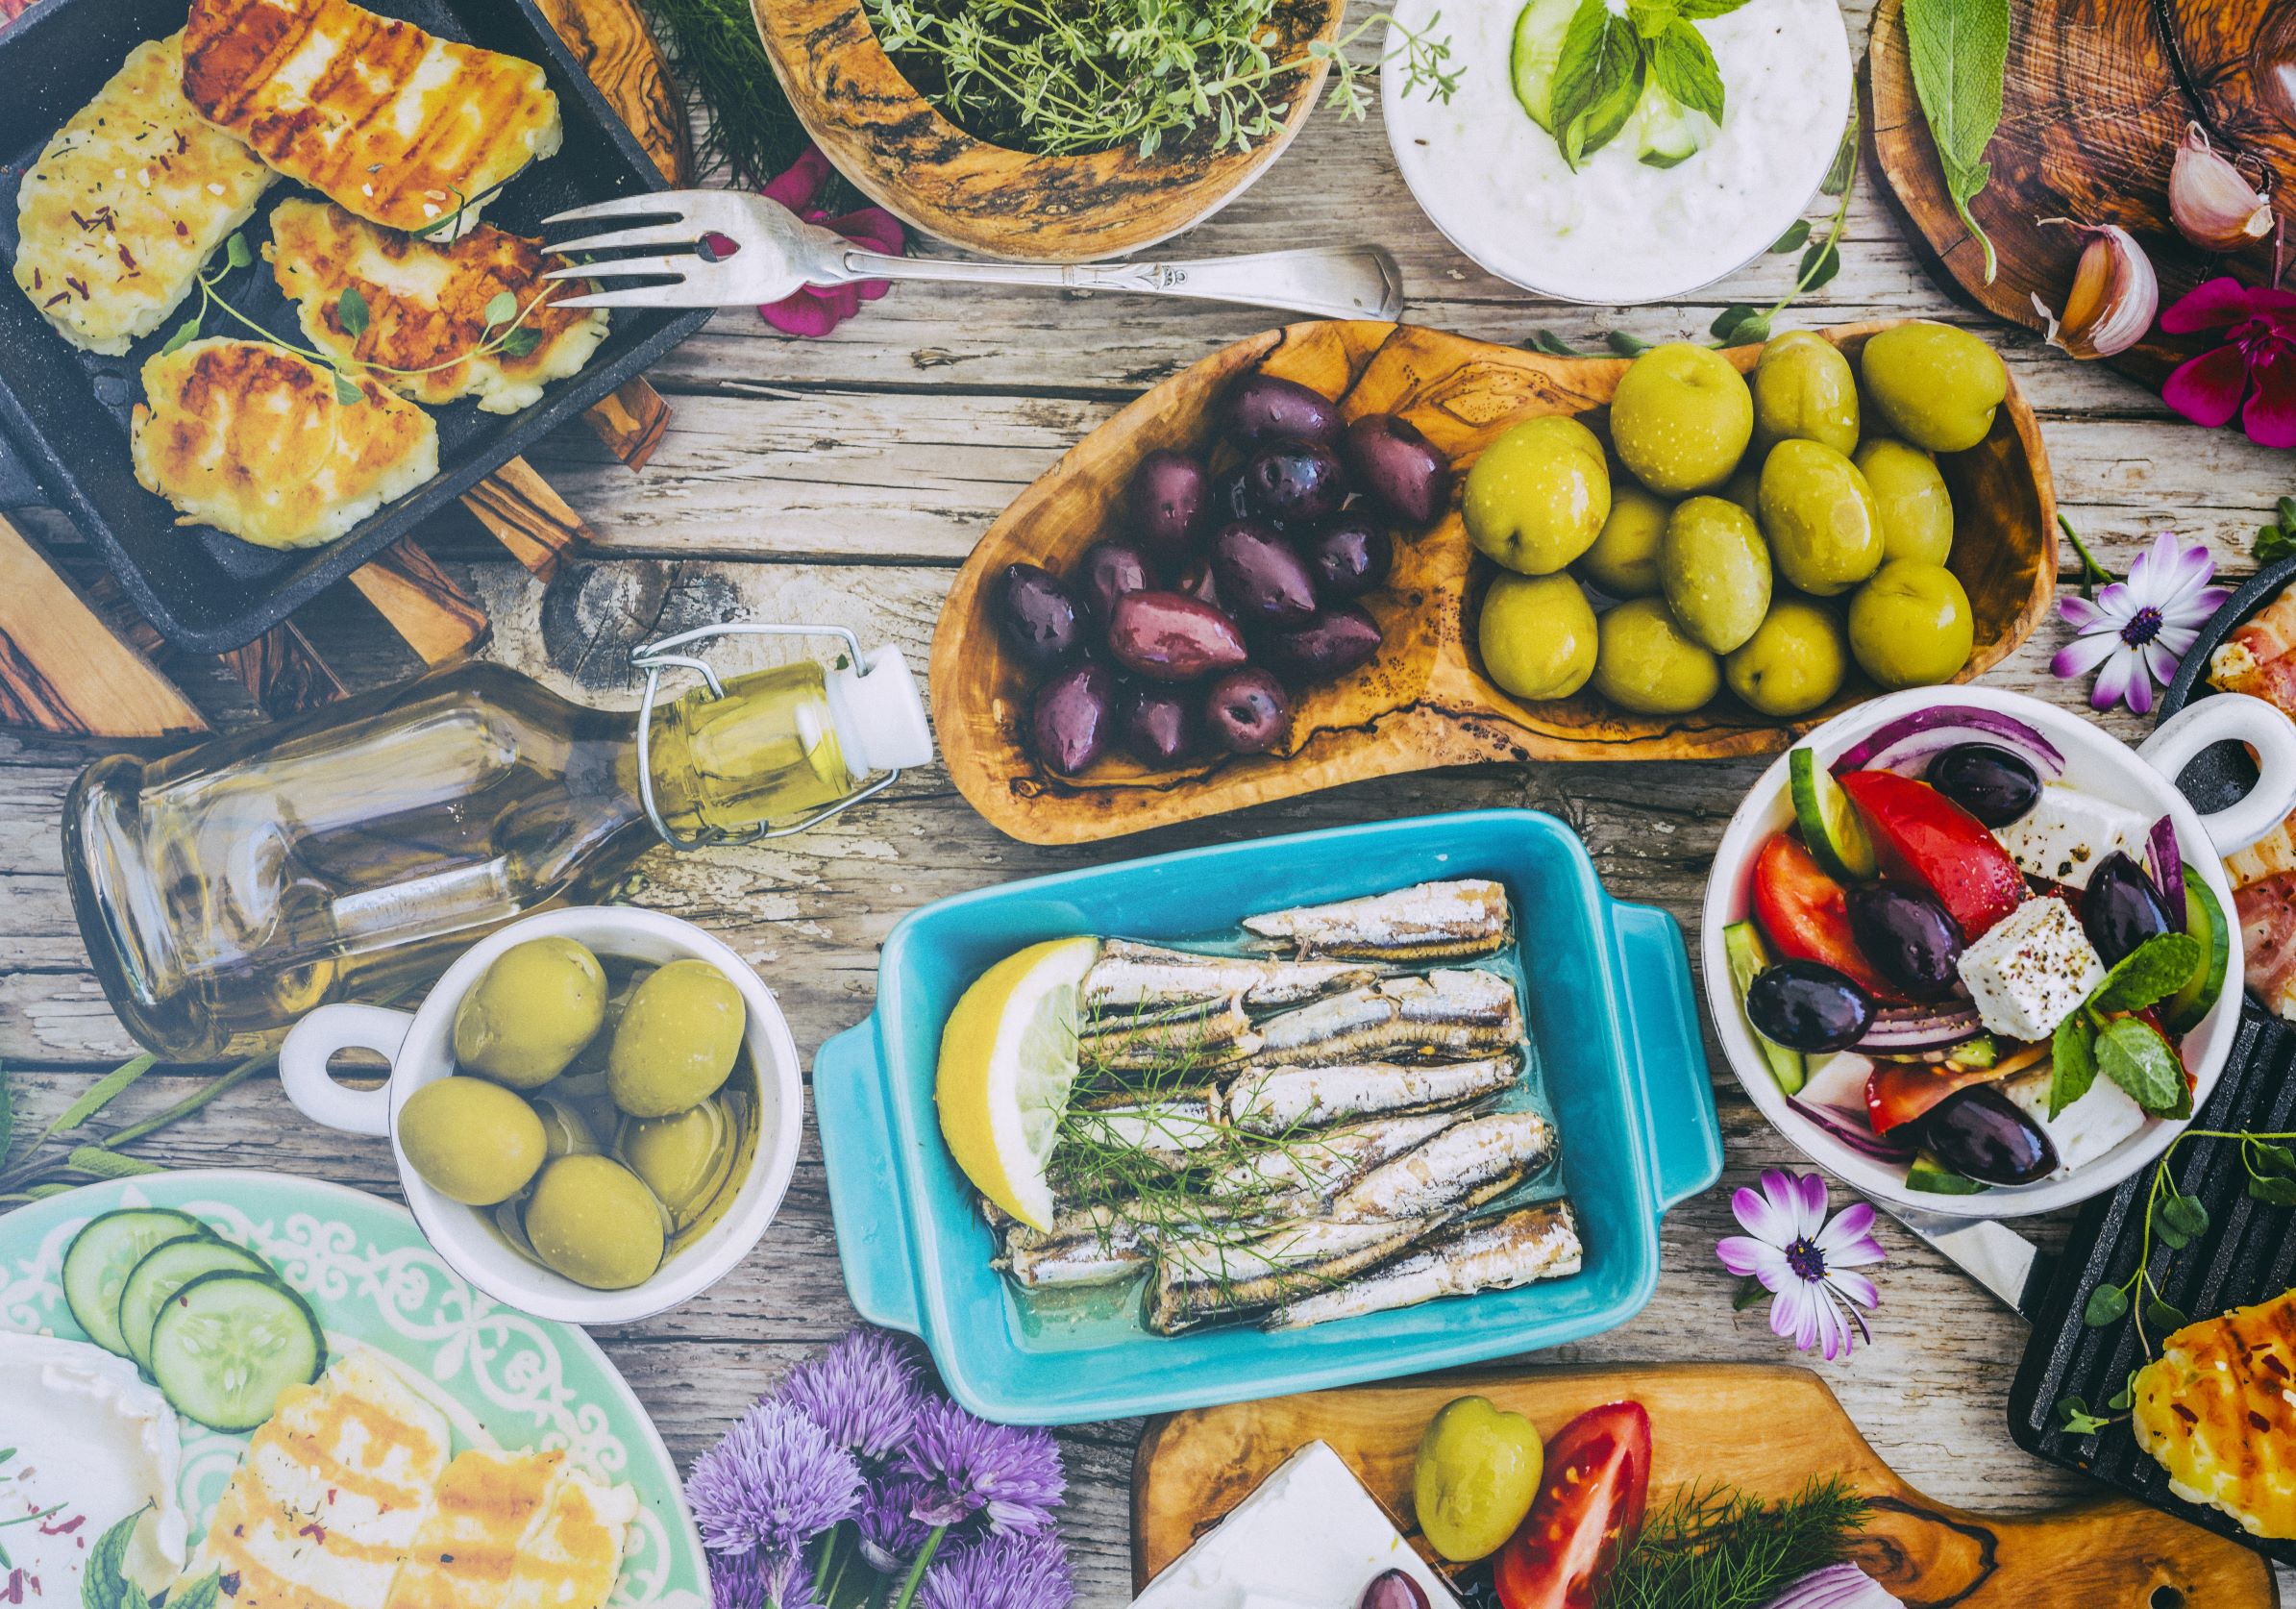 Μεσογειακή διατροφή: Όλες οι πρακτικές συμβουλές για να την εφαρμόσεις στην καθημερινότητά σου